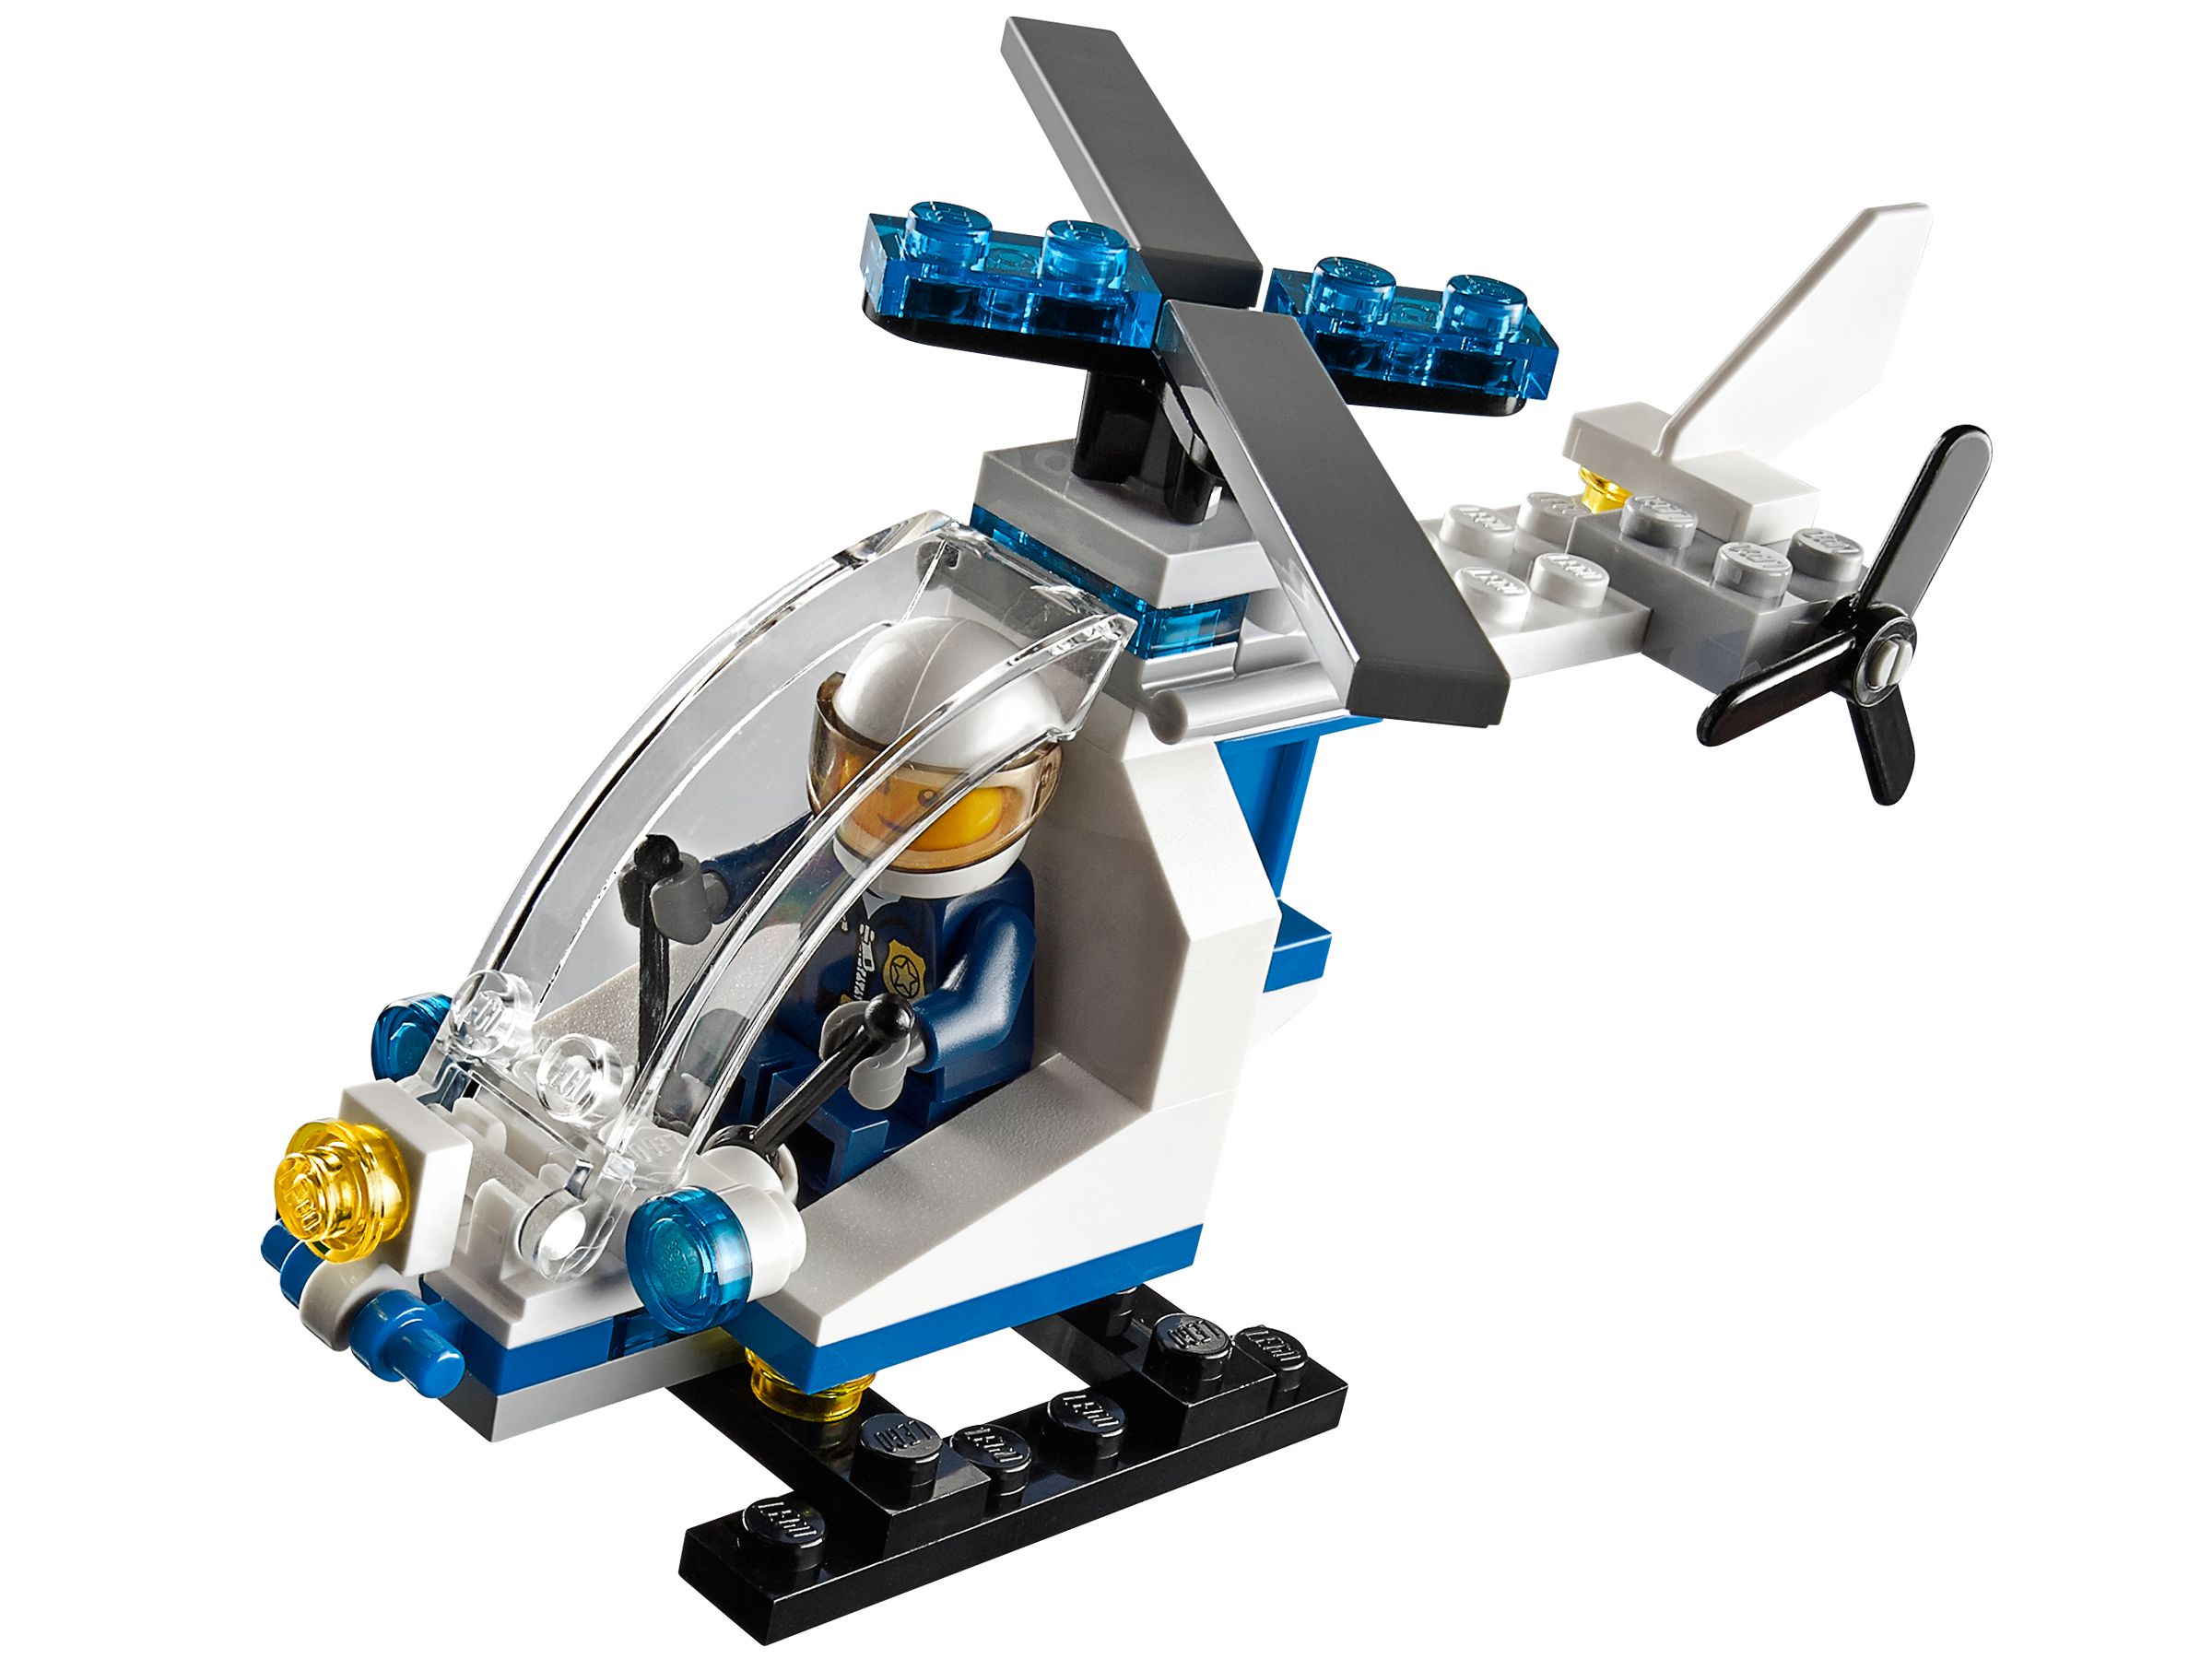 LEGO City 30226 Polizei-Helikopter LEGO_30226.jpg